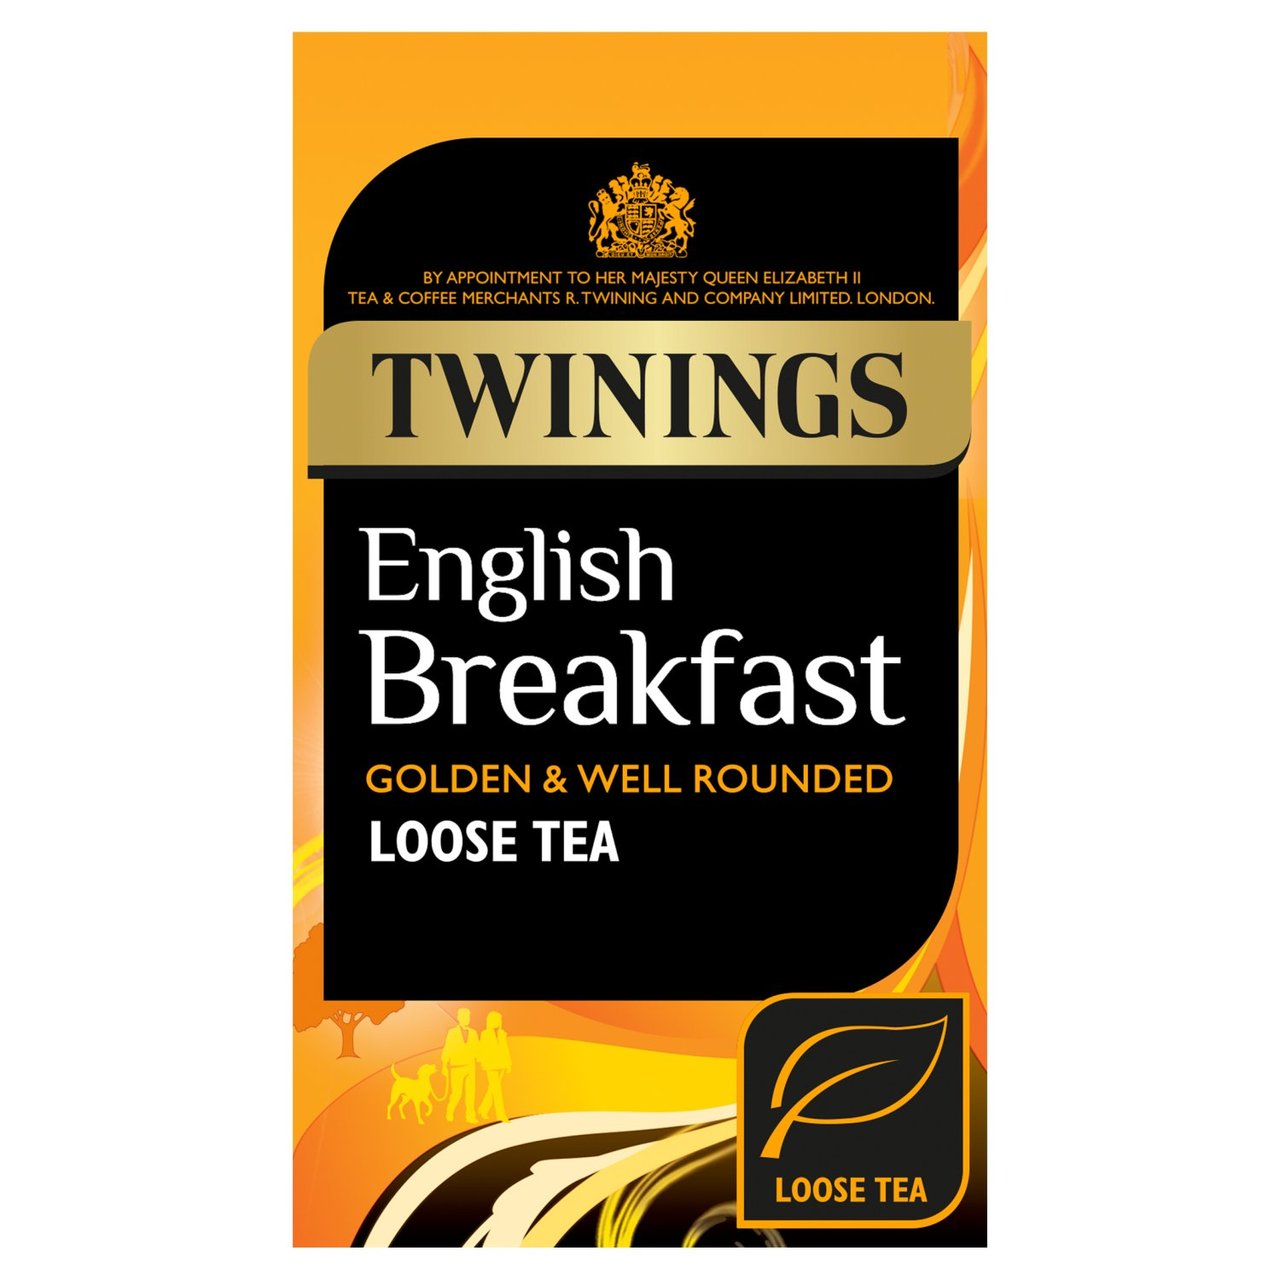 Ahmad Tea Majestic Breakfast Loose Leaf Tea (100g)